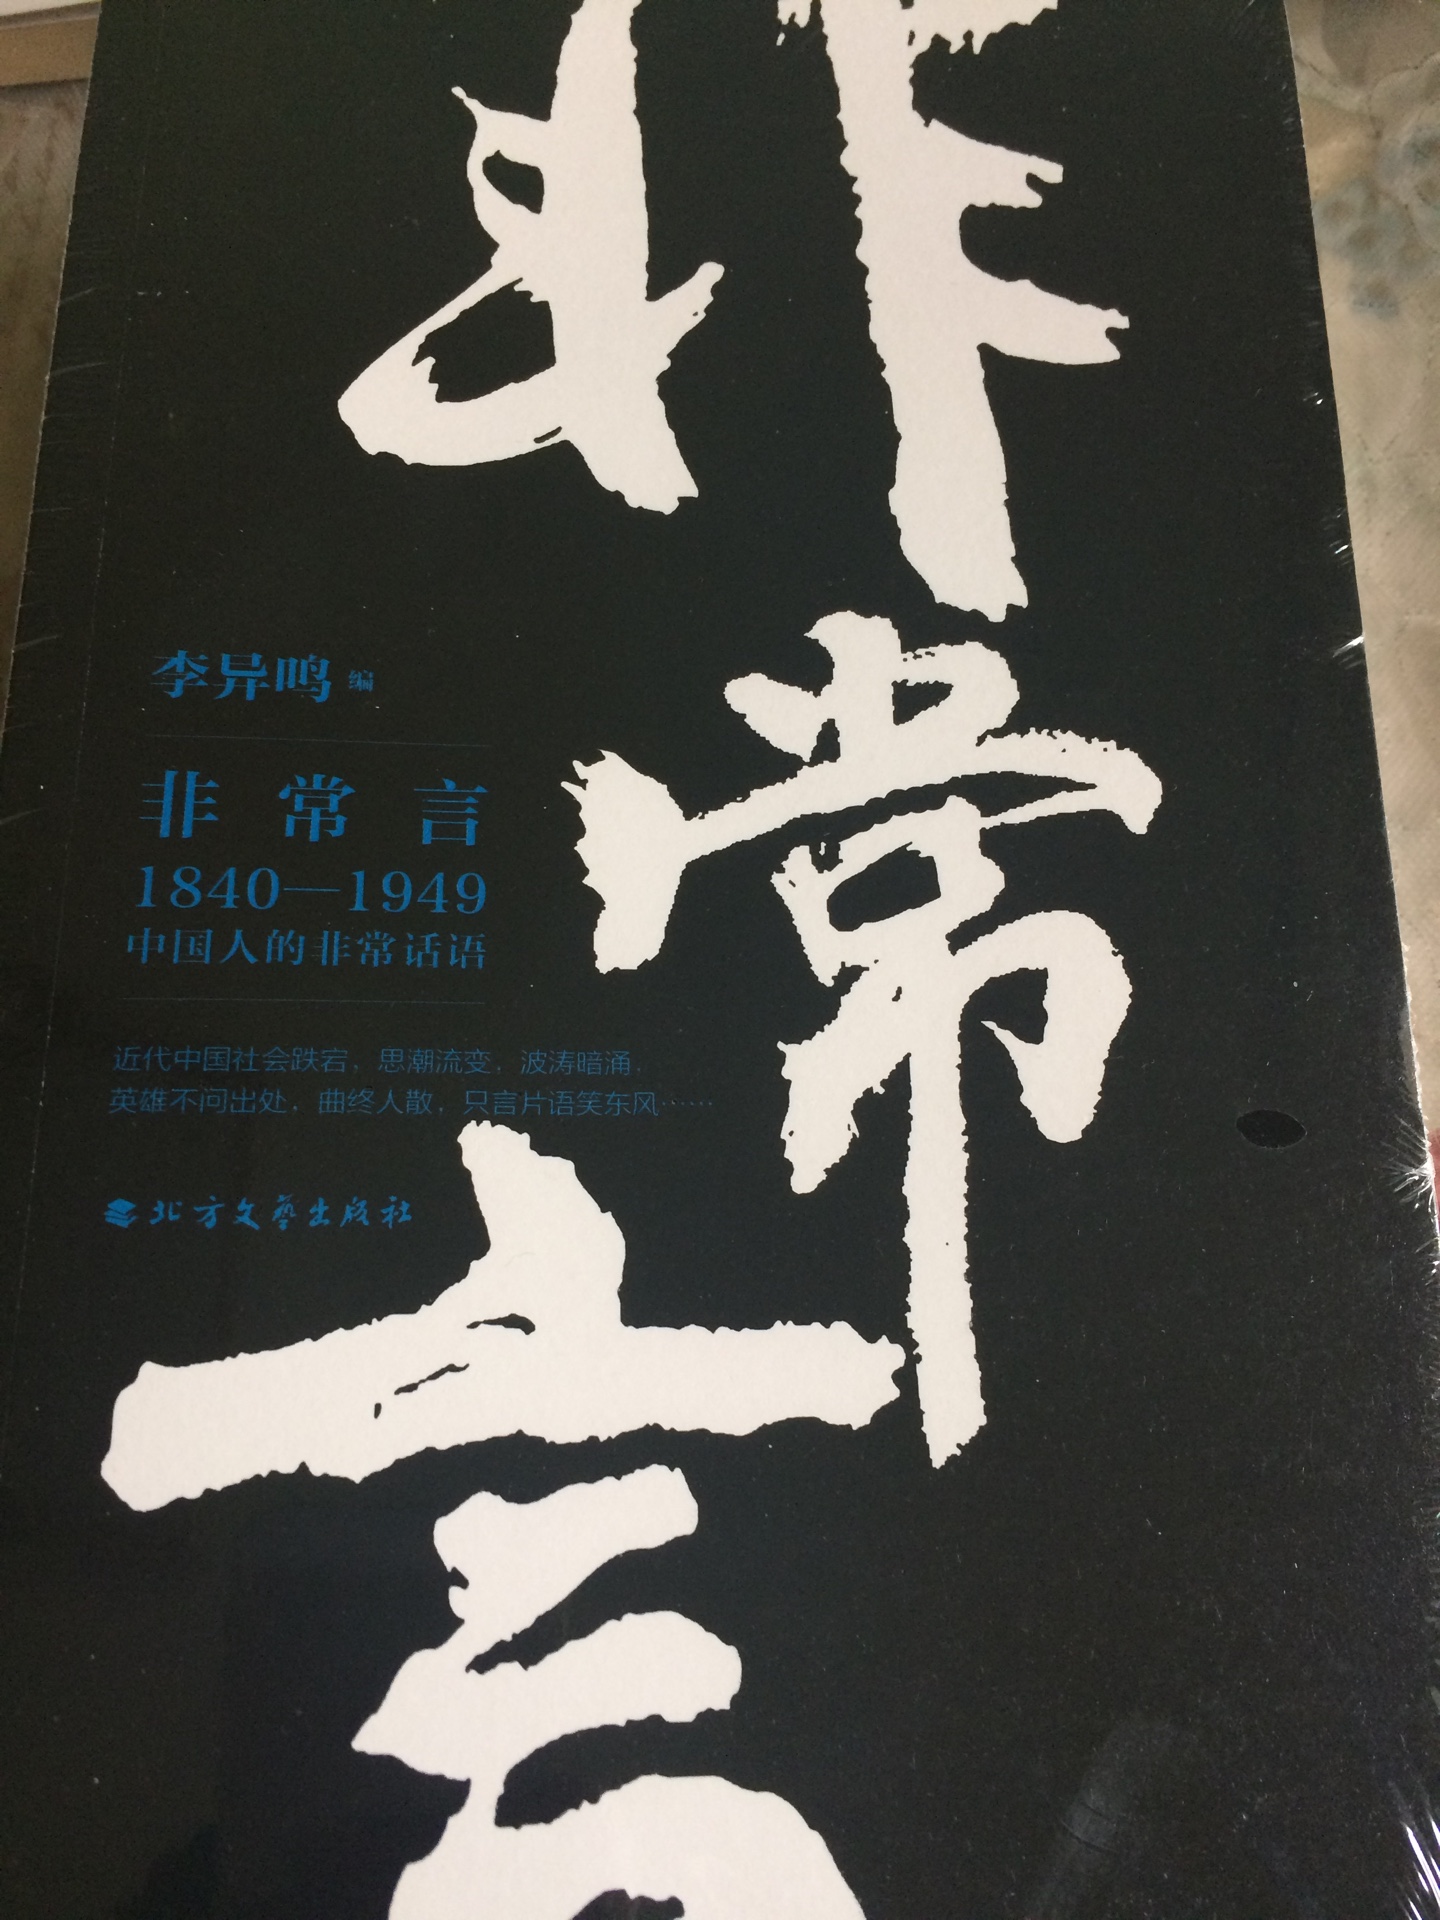 一本关于中国历史的书，值得推荐阅读。